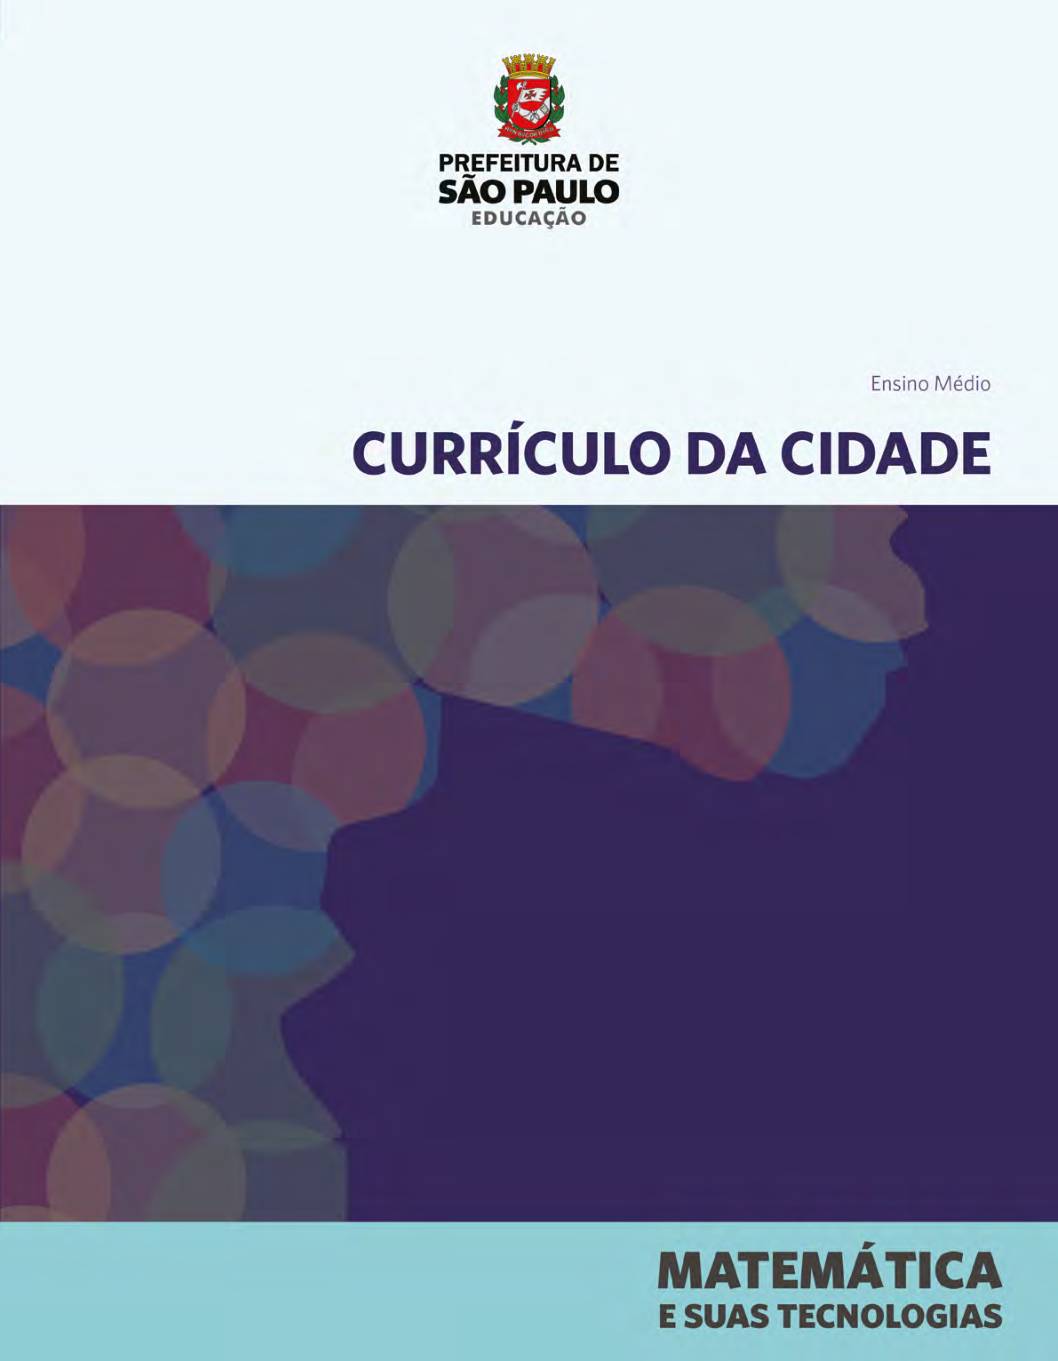 Currículo da Cidade para o Ensino Médio: área do conhecimento Matemática e suas tecnologias.